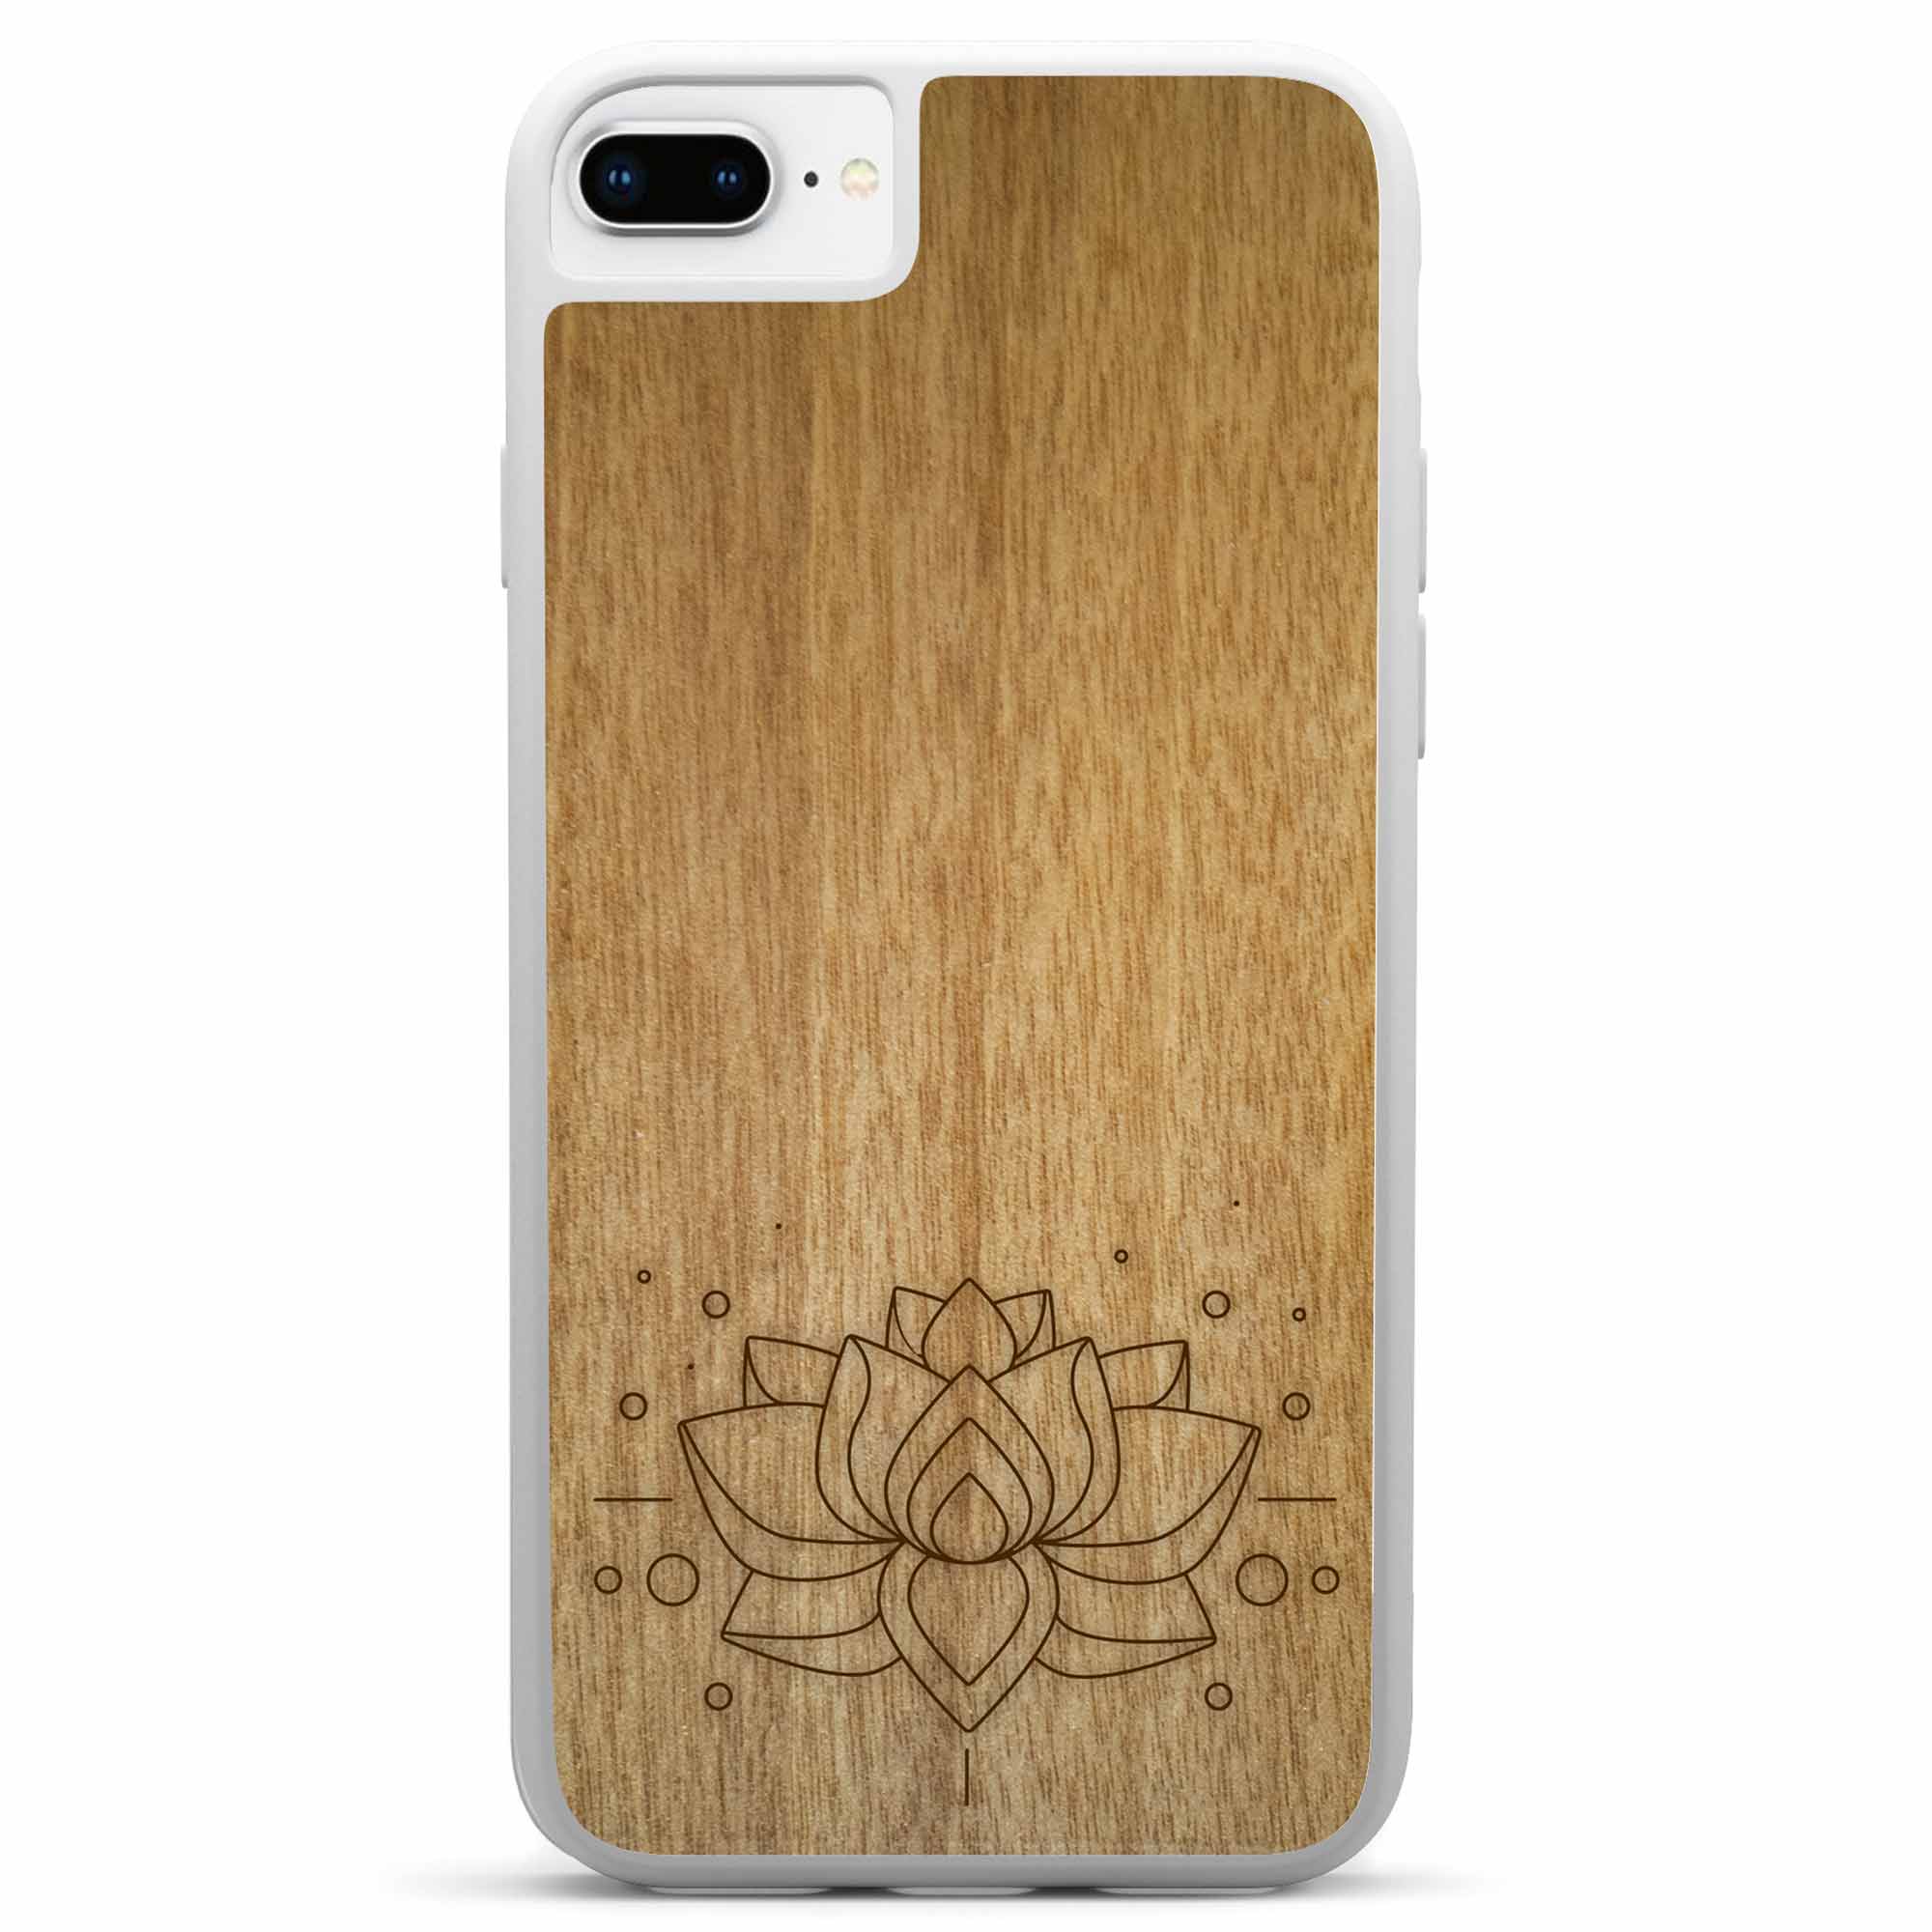 Белый чехол для телефона с гравировкой из дерева лотоса для iPhone 8 Plus